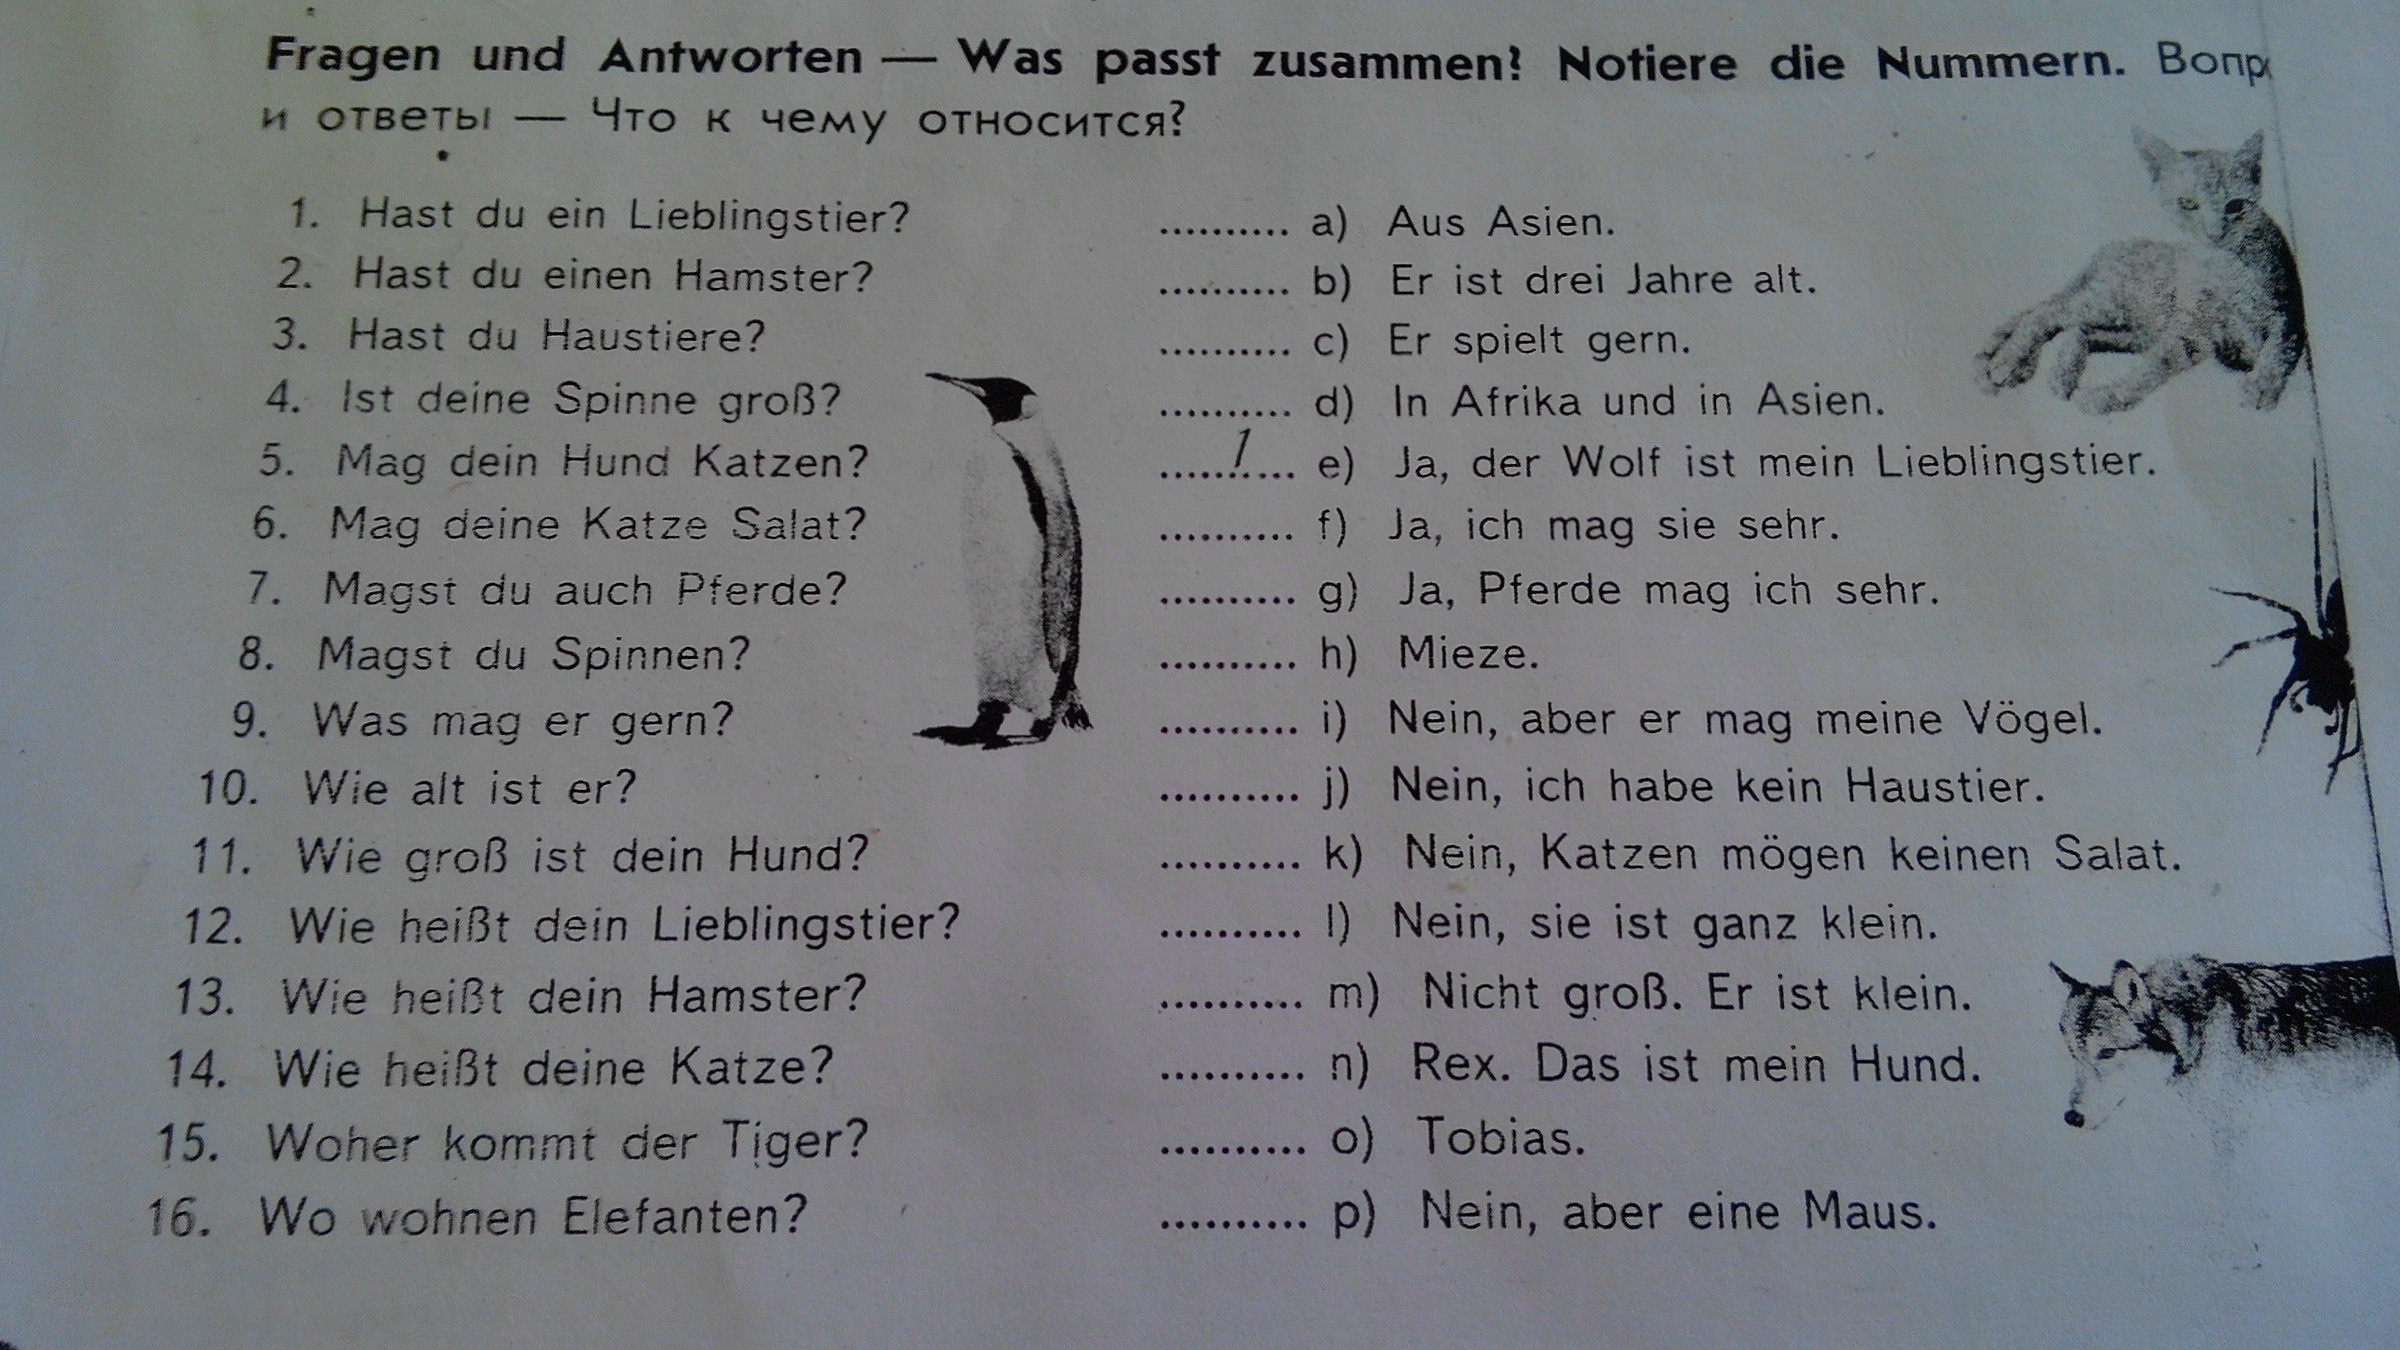 Alt er ist. Вопросы другу. Ответы на вопросы немецкий язык hast du ein Haustier. Was passt zusammen немецкий язык 7. Hast du ein Lieblingstier ответы.